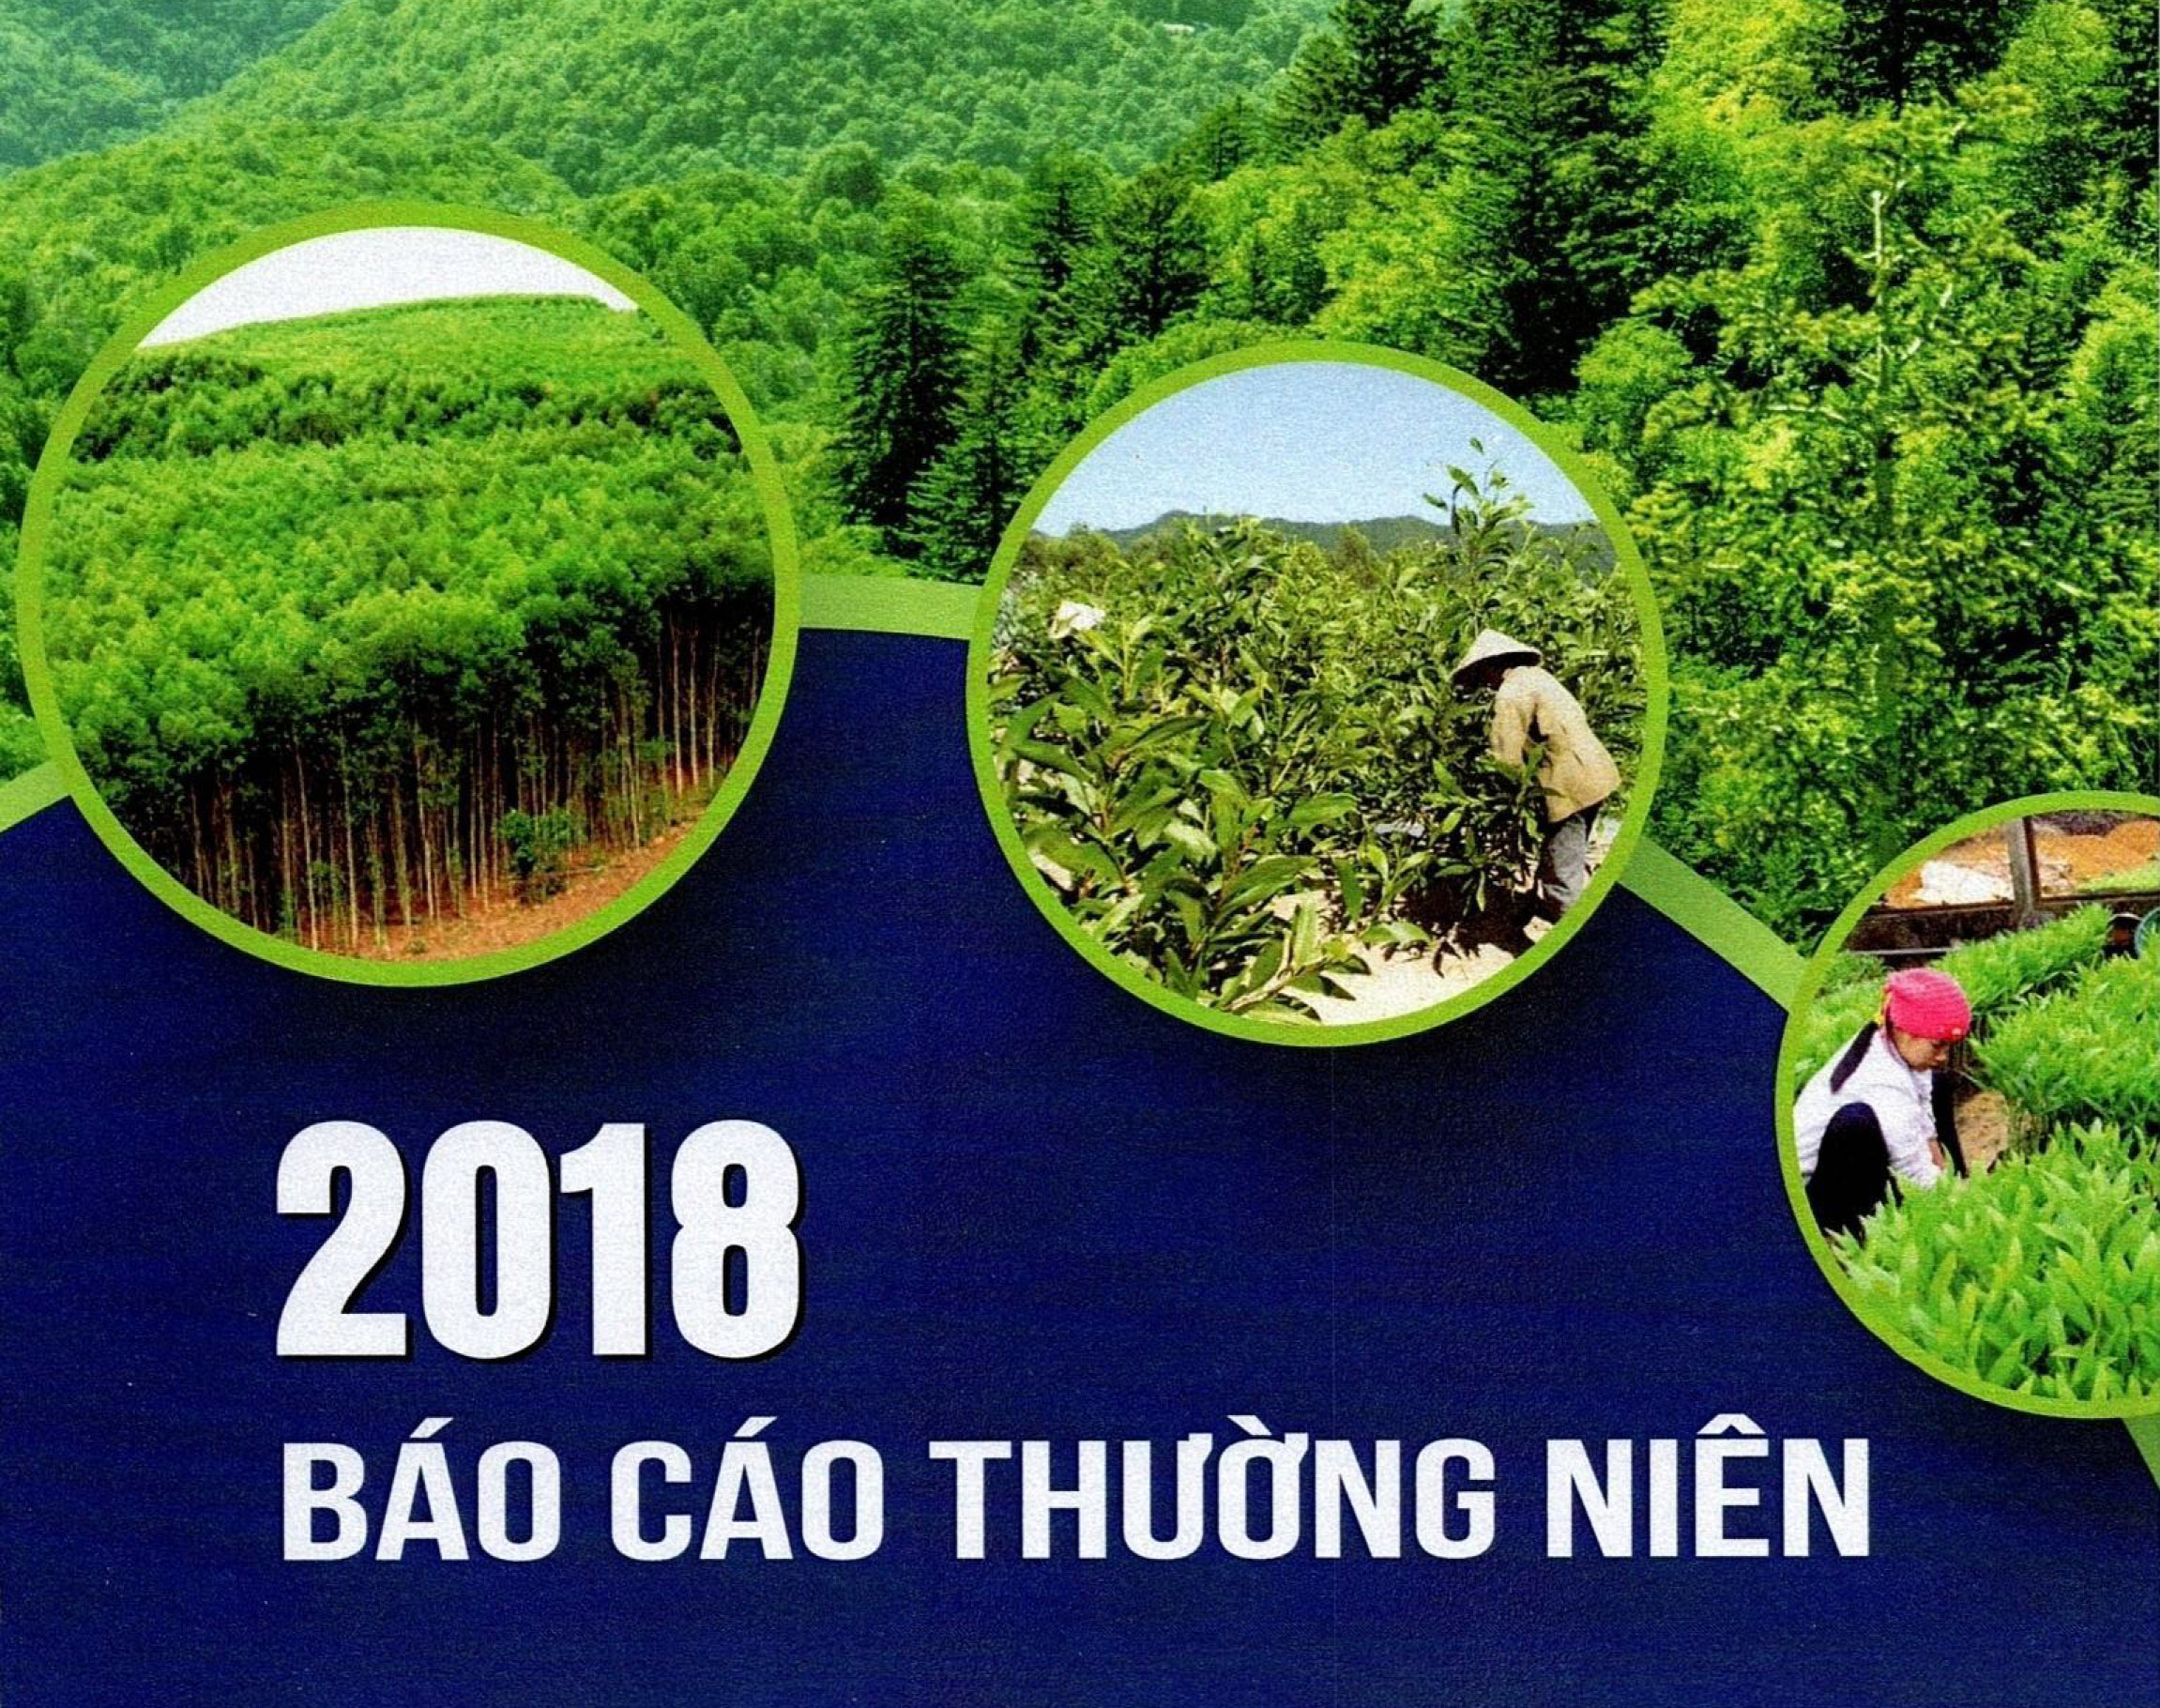 CBTT Báo cáo thường niên năm 2018 của Tổng công ty Lâm nghiệp Việt Nam - CTCP